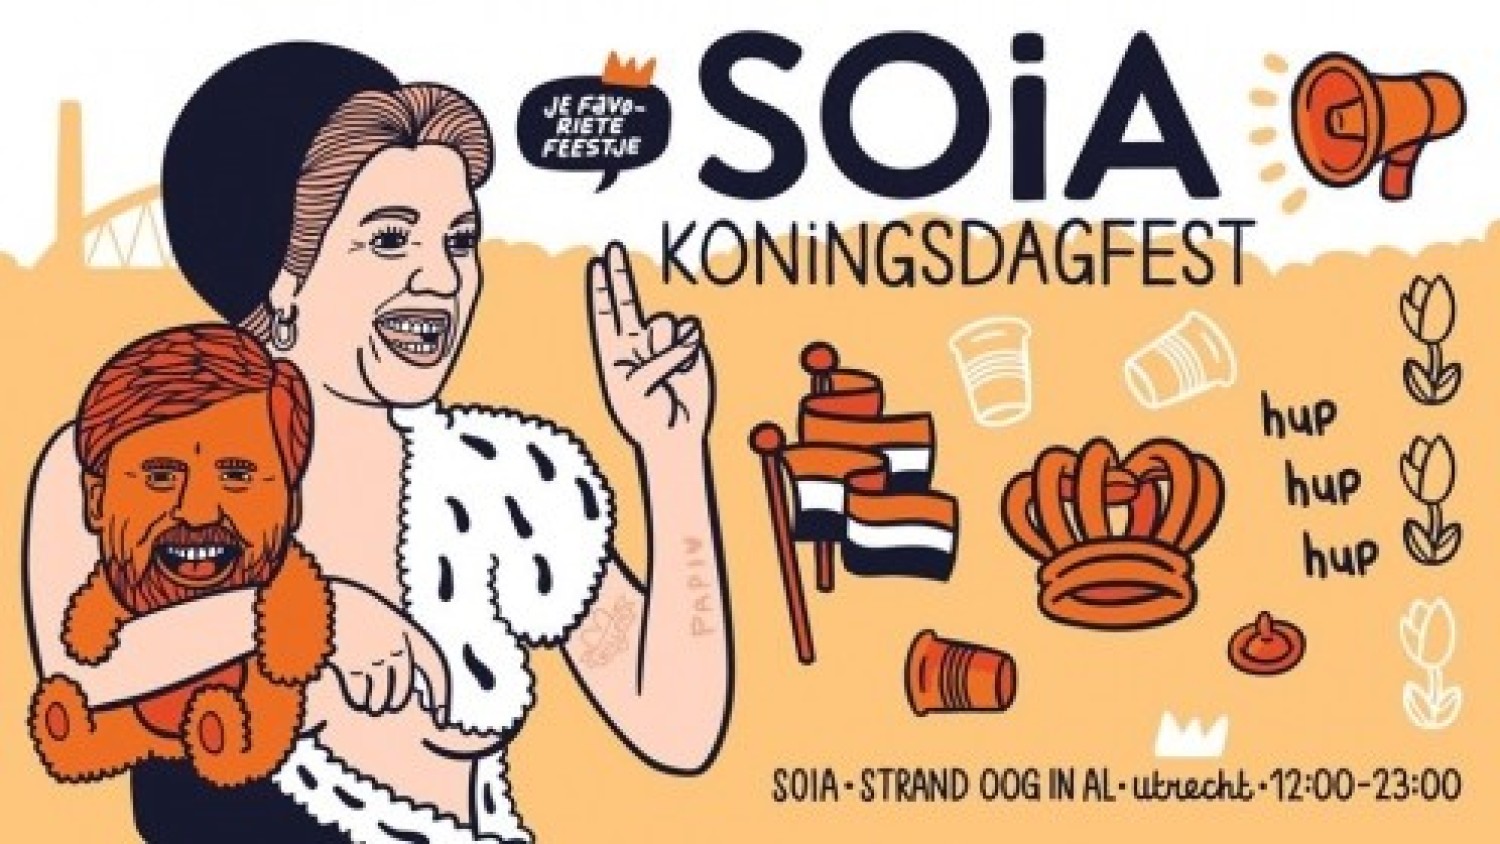 Soia - Koningsdag Fest 2021